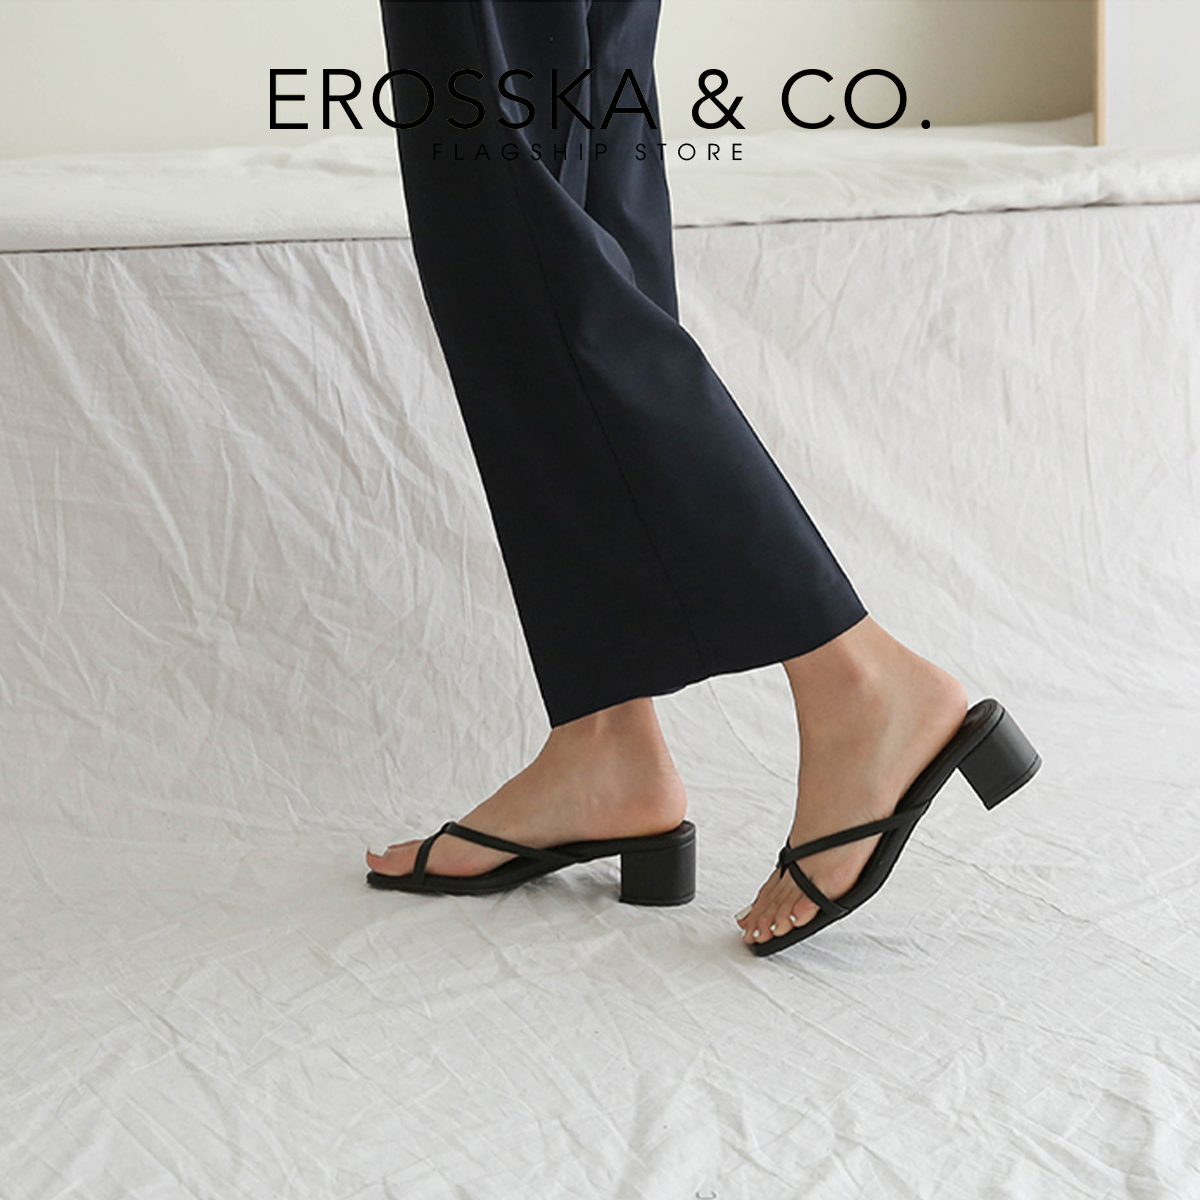 Dép cao gót Erosska xỏ ngón phối dây kiểu dáng Hàn Quốc cao 5cm EM075